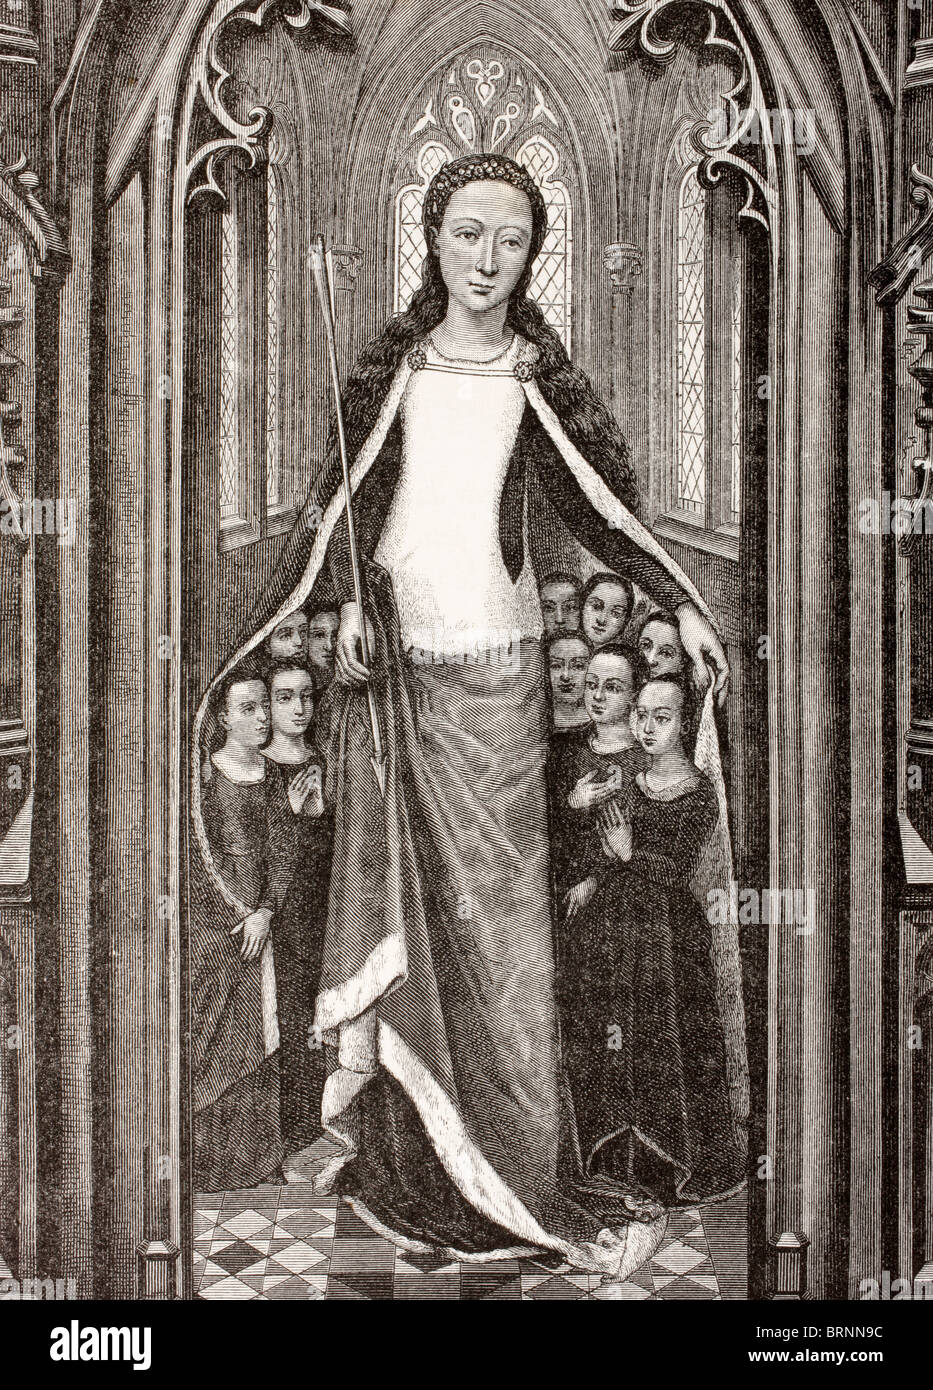 Sankt Ursula hält einen Pfeil, das Symbol von ihrem Martyrium und Jungfrauen unter ihren Mantel zu schützen. Stockfoto